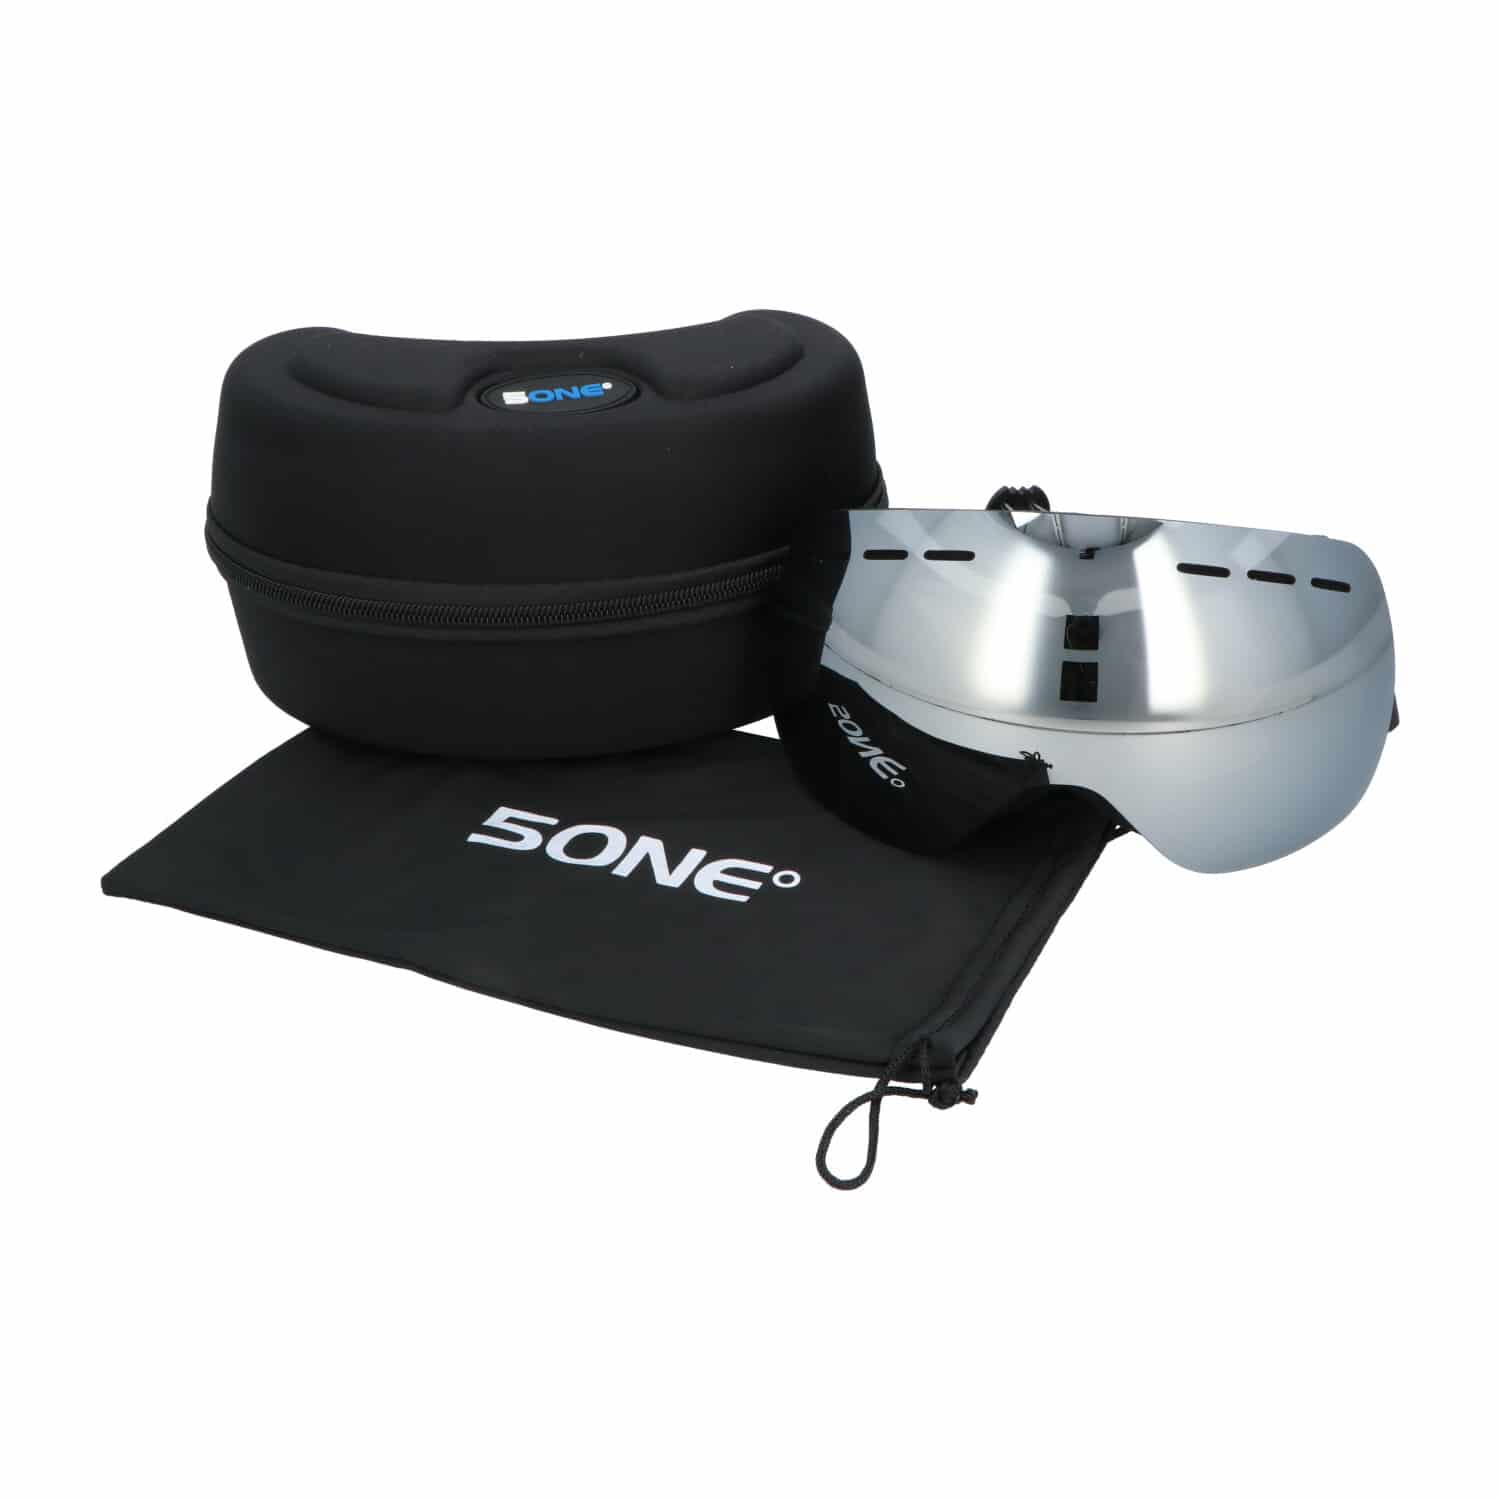 5one® Alpine 1 Silver anti-condens Skibril met hardcase - Zwart frame